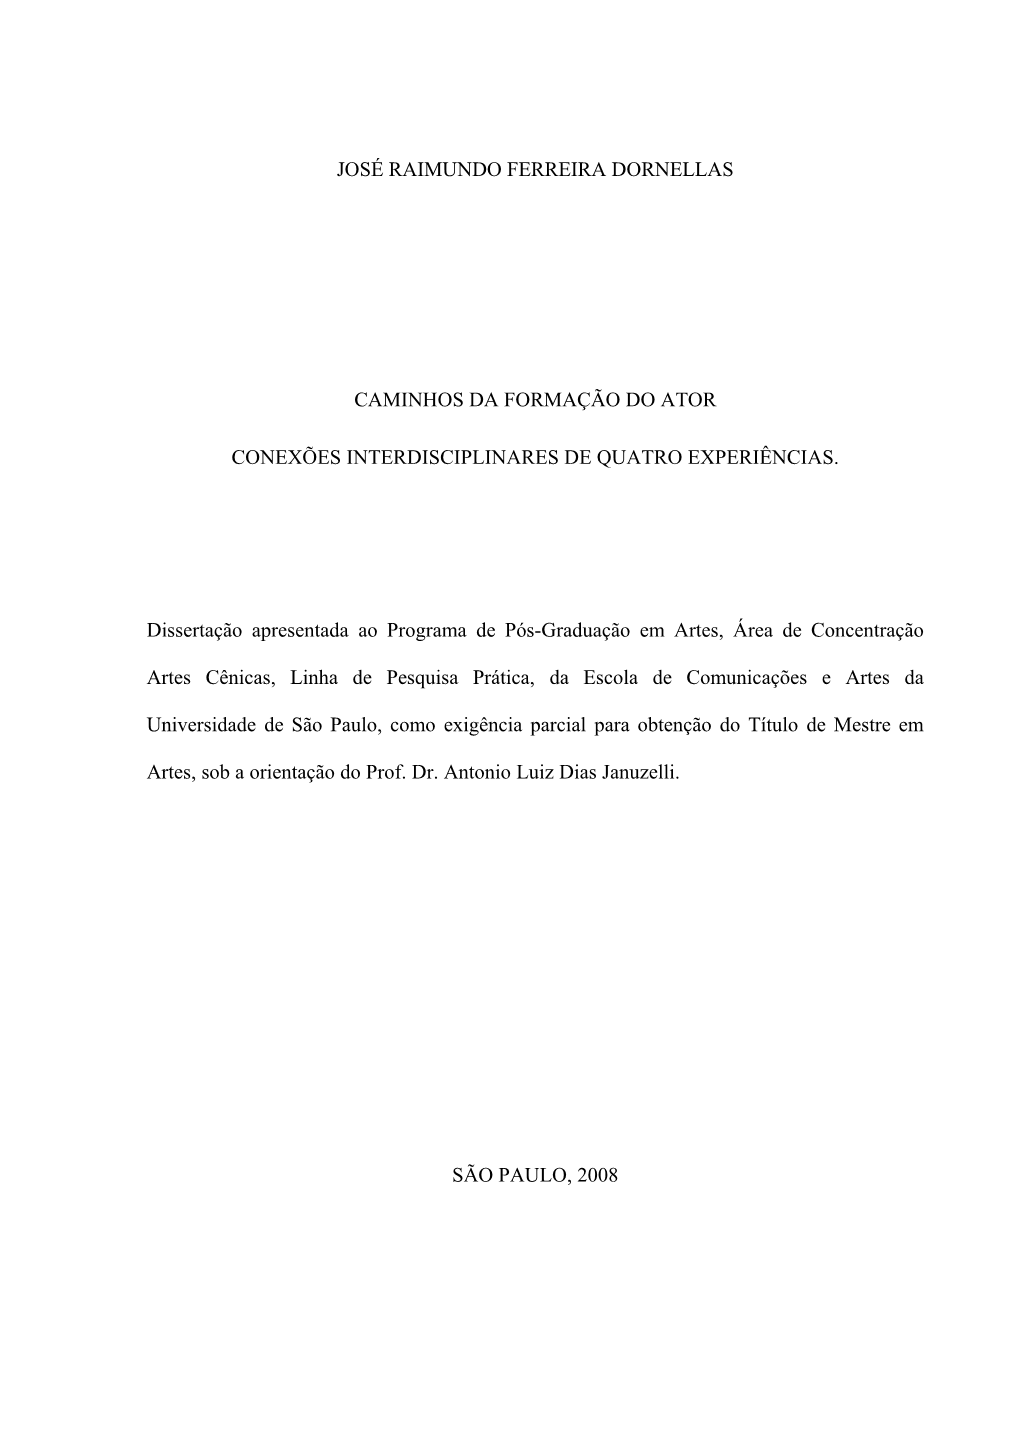 JOSÉ RAIMUNDO FERREIRA DORNELLAS CAMINHOS DA FORMAÇÃO DO ATOR CONEXÕES INTERDISCIPLINARES DE QUATRO EXPERIÊNCIAS. Disserta